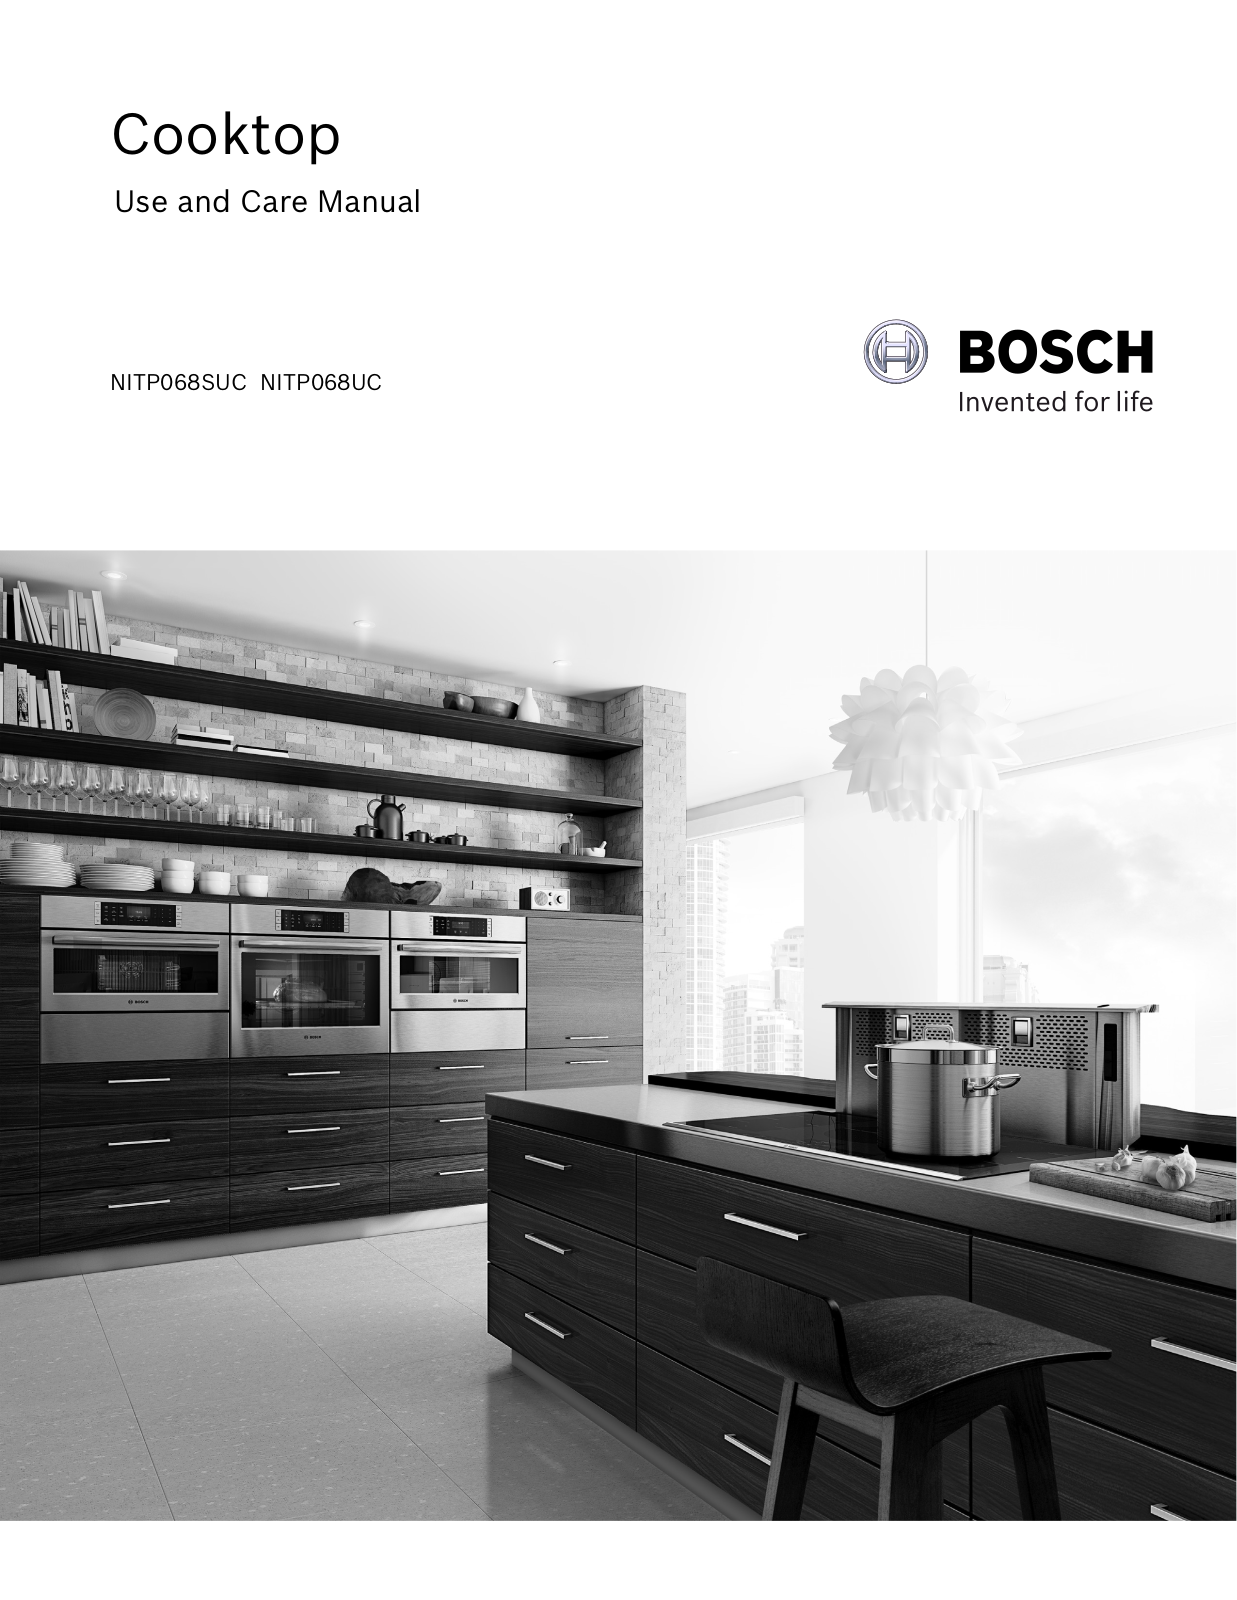 Bosch NITP068UC/01, NITP068SUC/01 Owner’s Manual